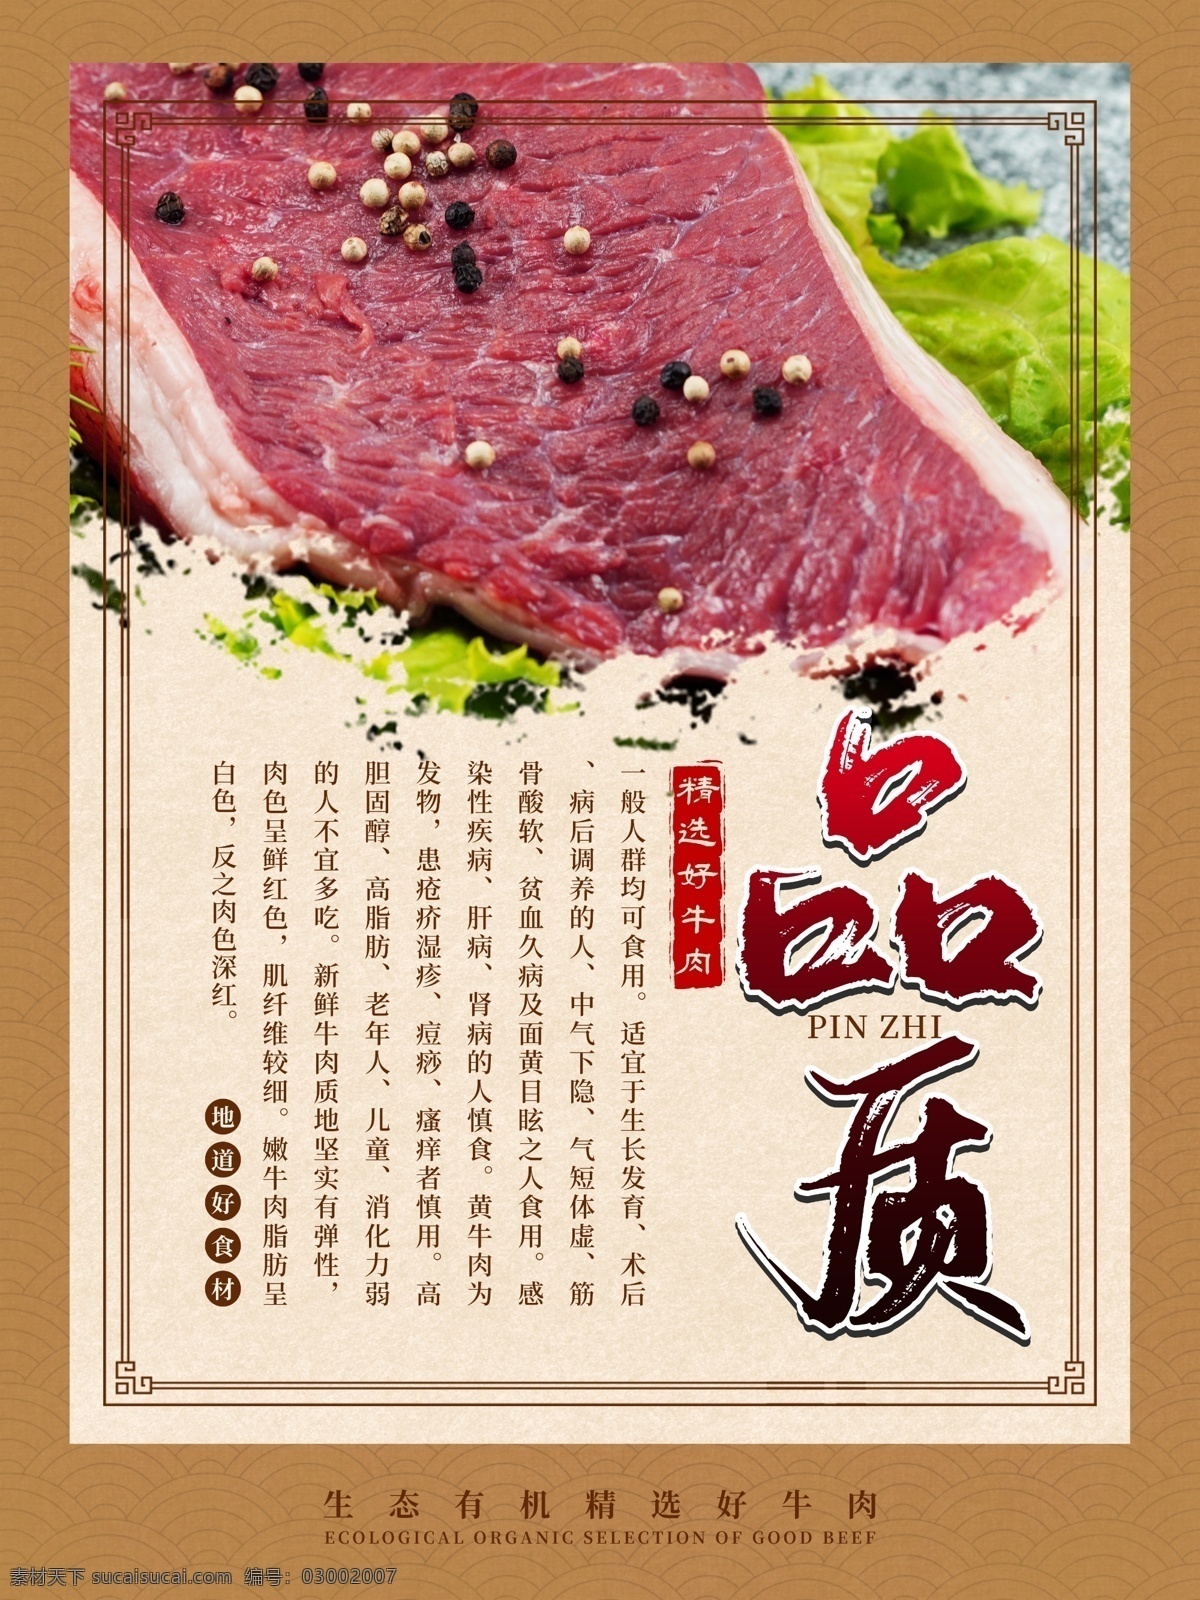 品质牛肉海报 牛肉 牛排 肉类 禽类 烤肉 生鲜 产品介绍 超市海报 品质牛肉 宣传海报